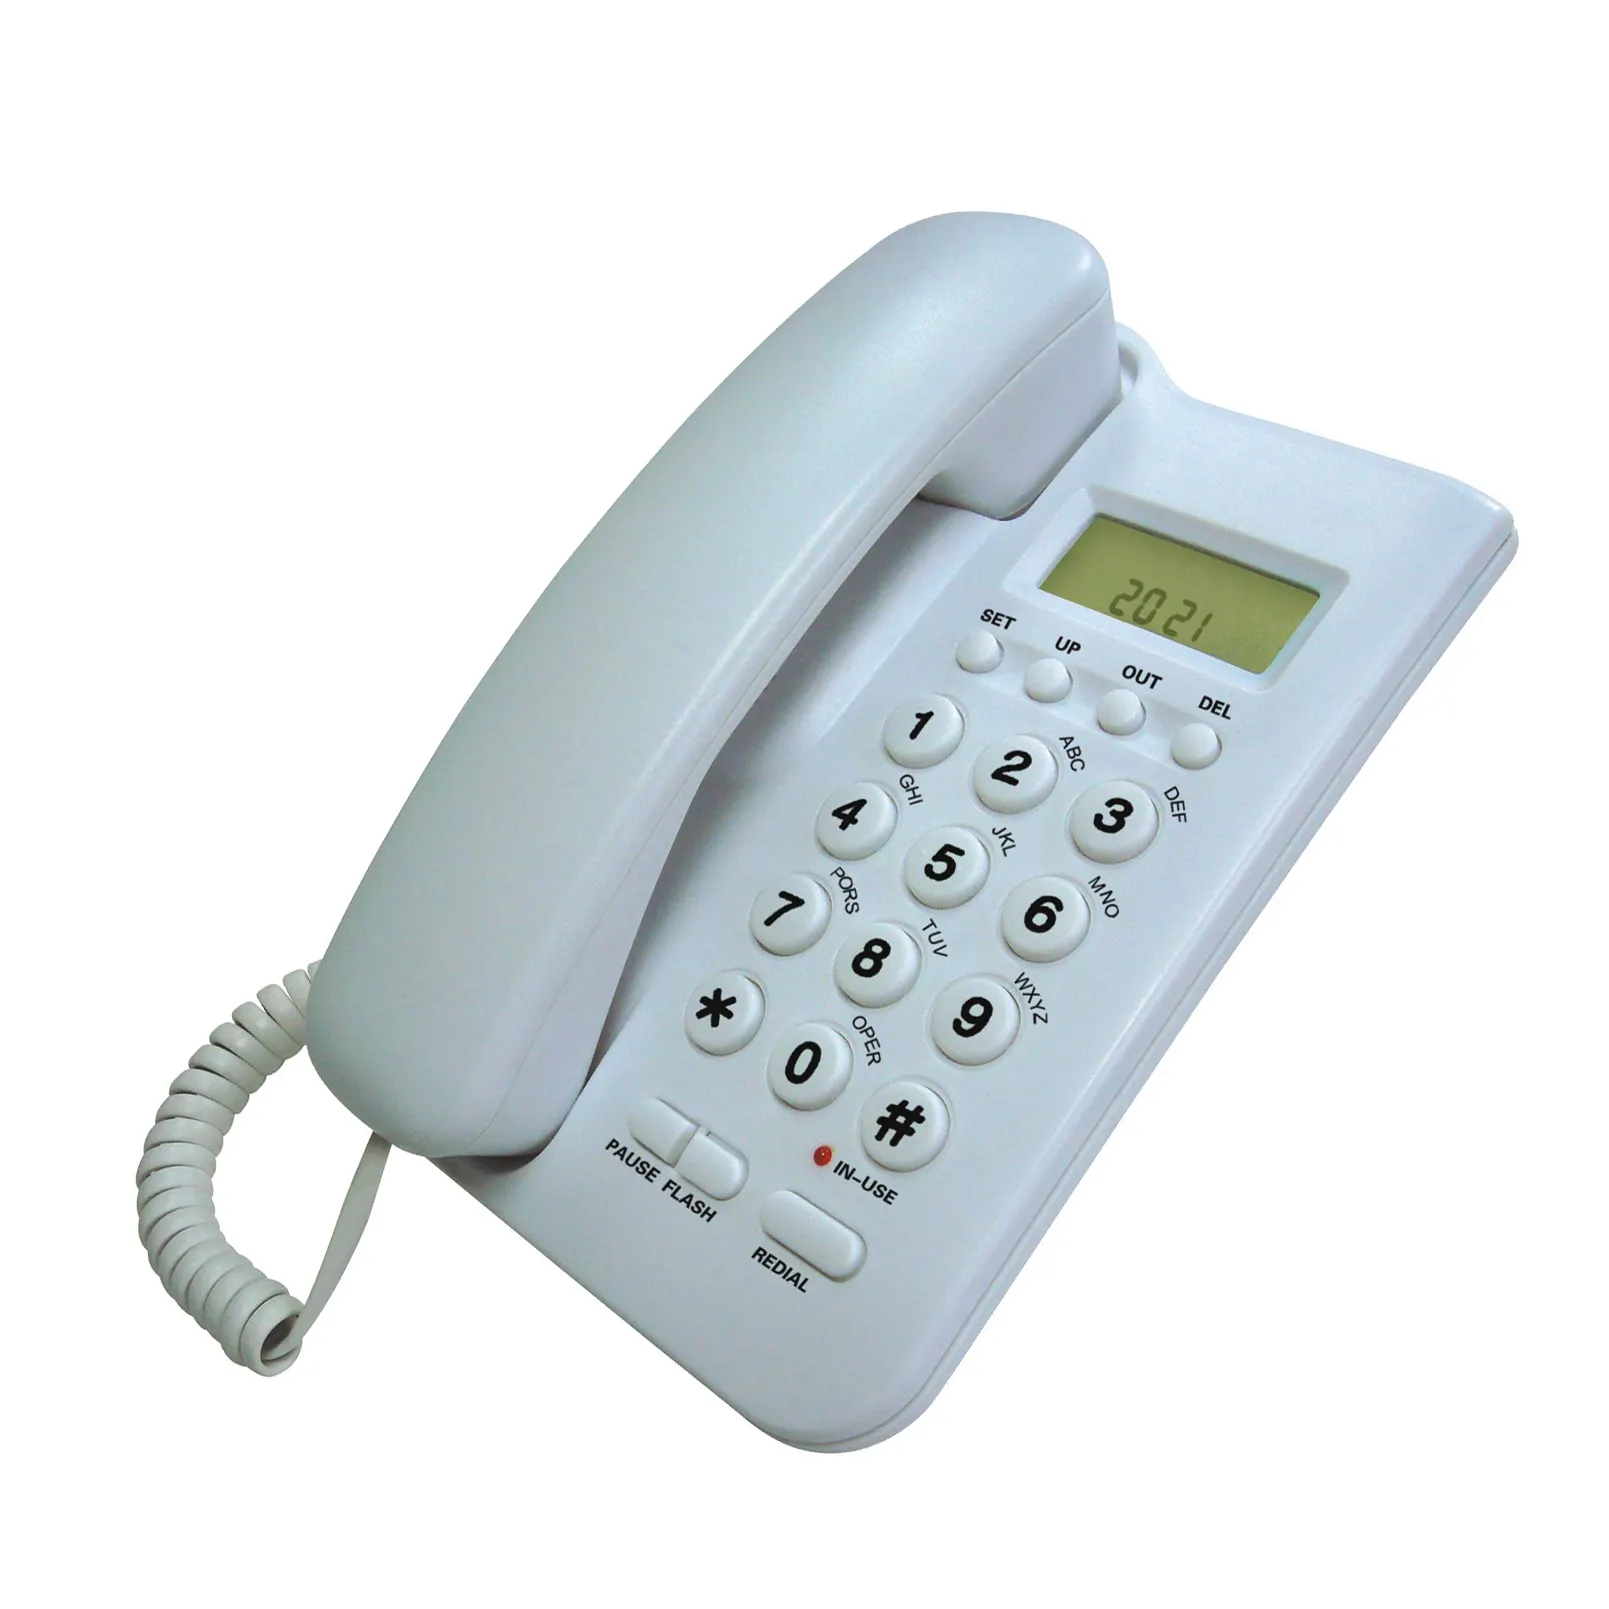 CFH новая модель LandlineTelephone Intercom Phone портативный светодиодный дисплей